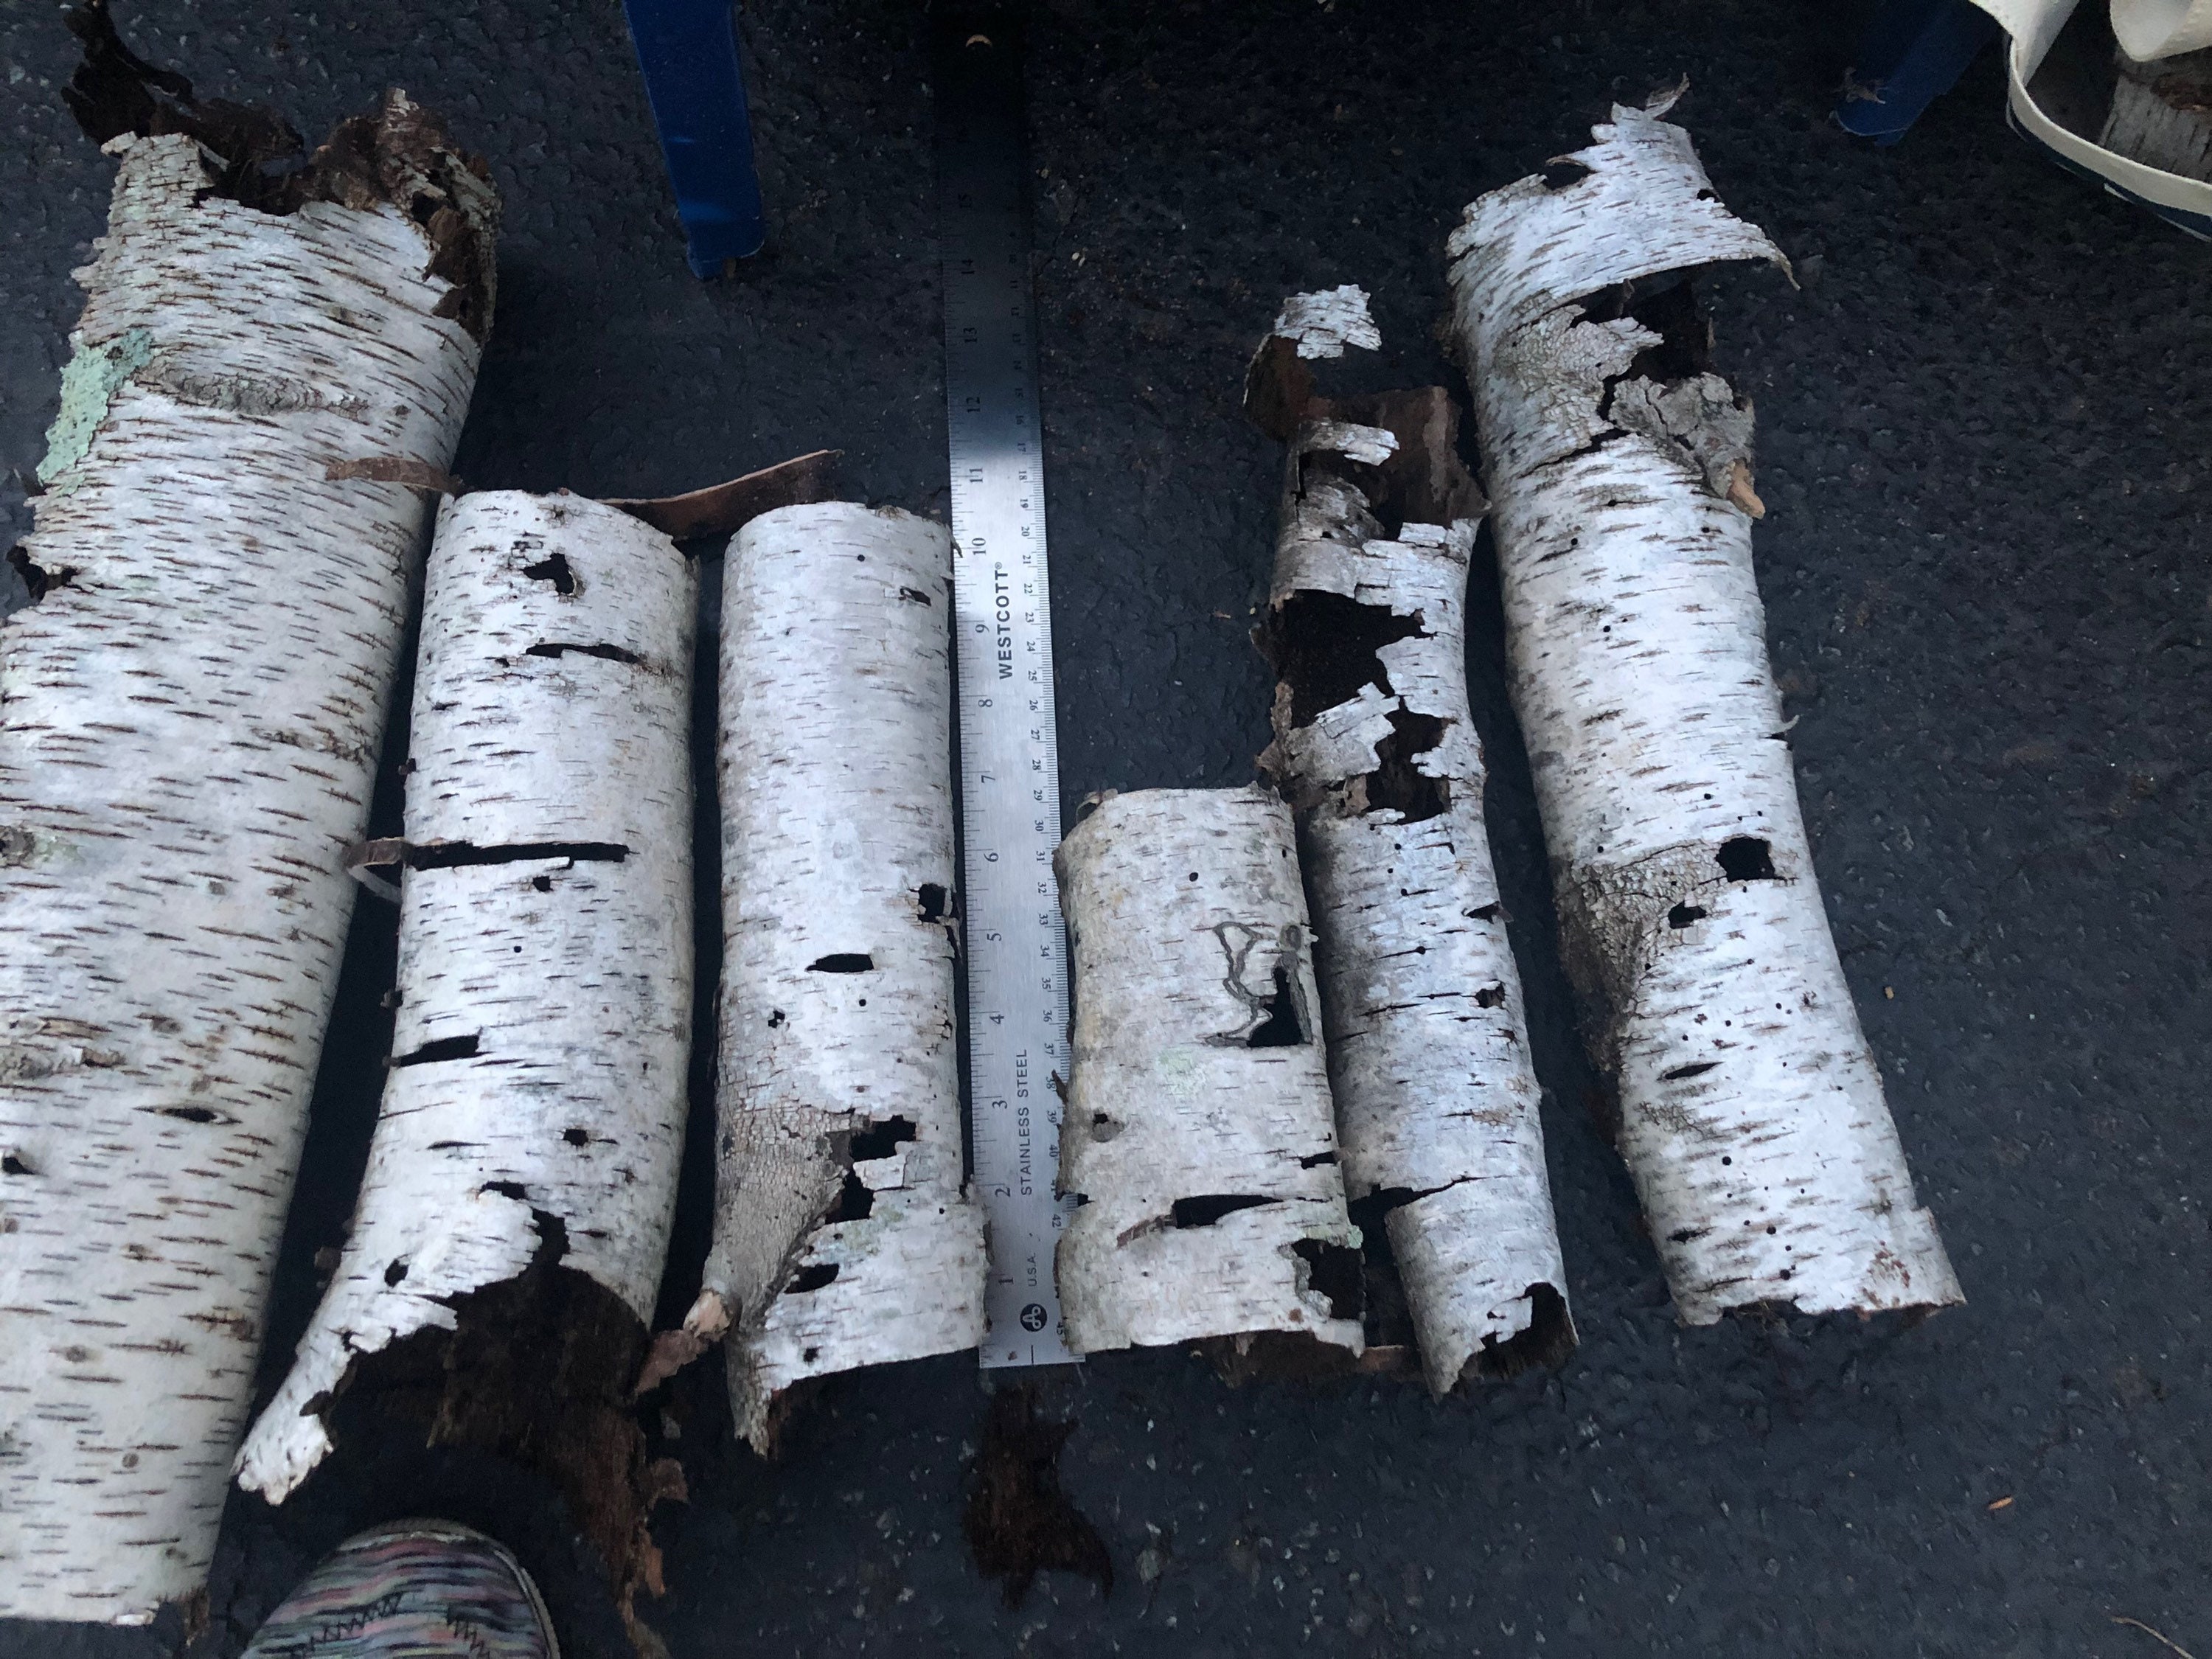 White Birch tubes - Birch Bark Cylinders